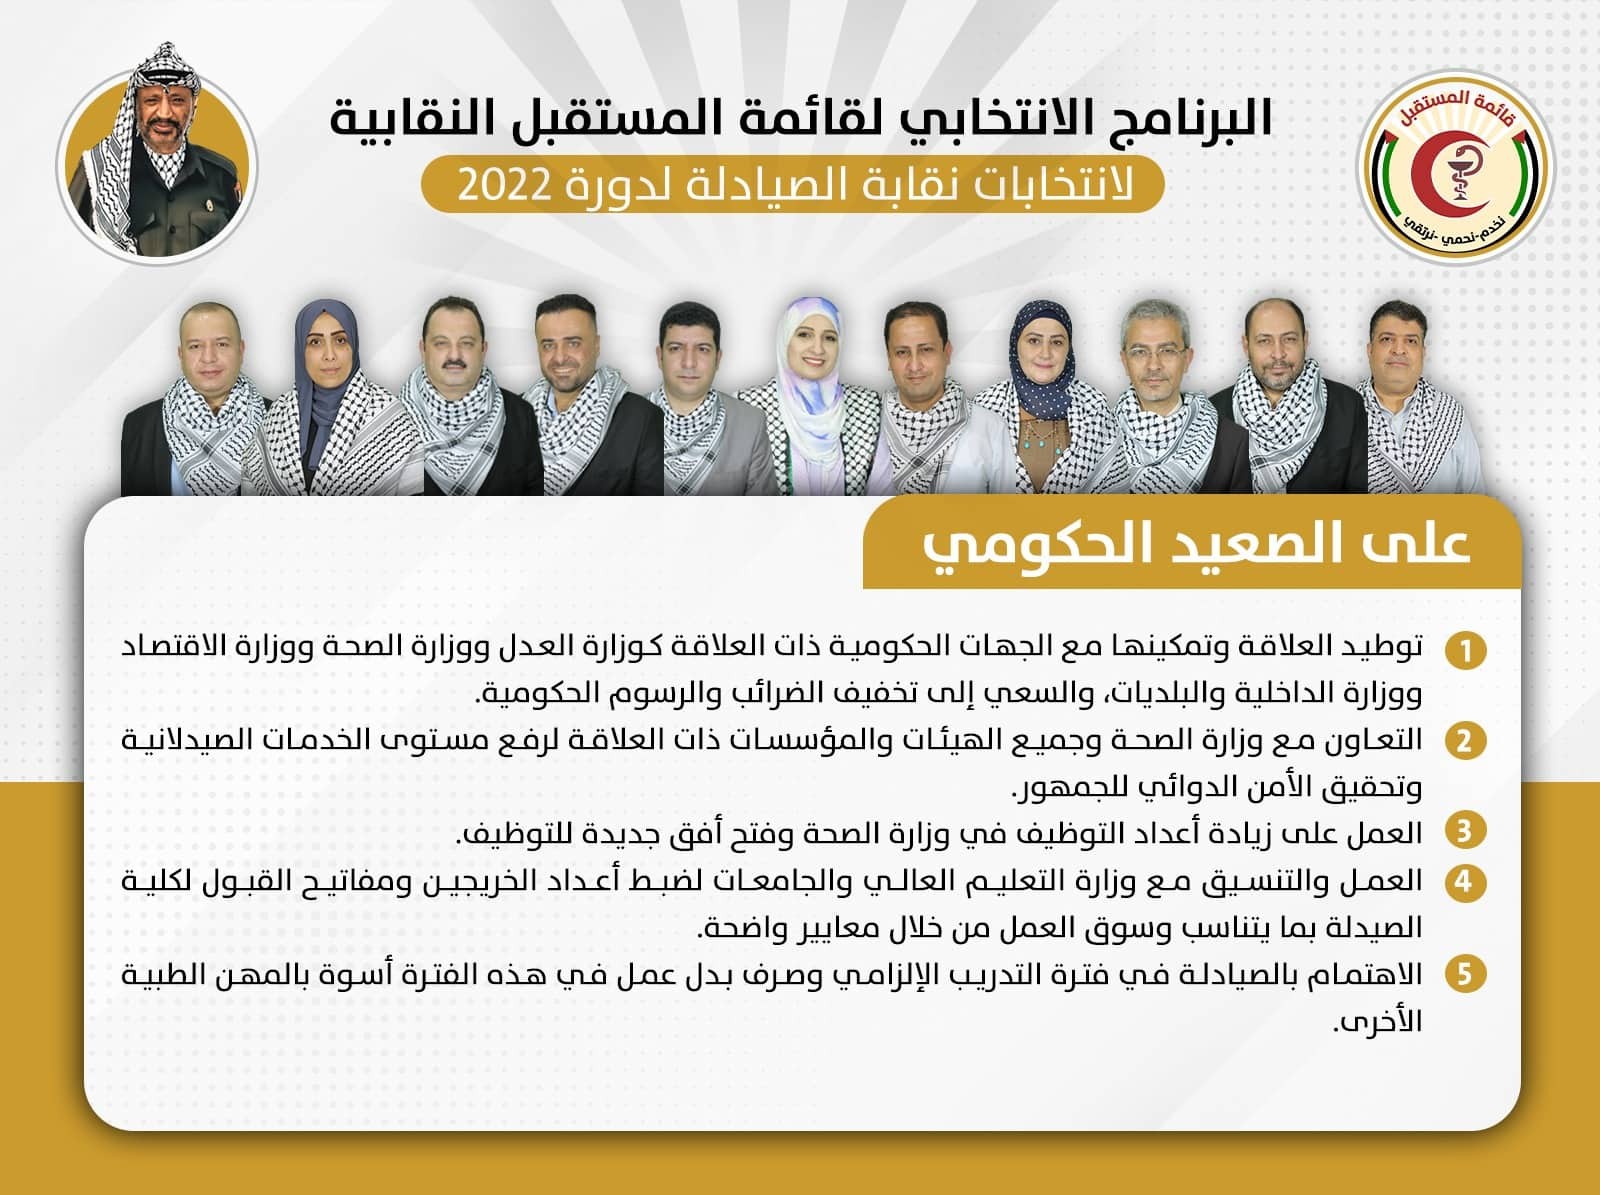 "قائمة المستقبل النقابية" تُعلن عن برنامجها الانتخابي لخوض انتخابات نقابة الصيادلة الفلسطينيين